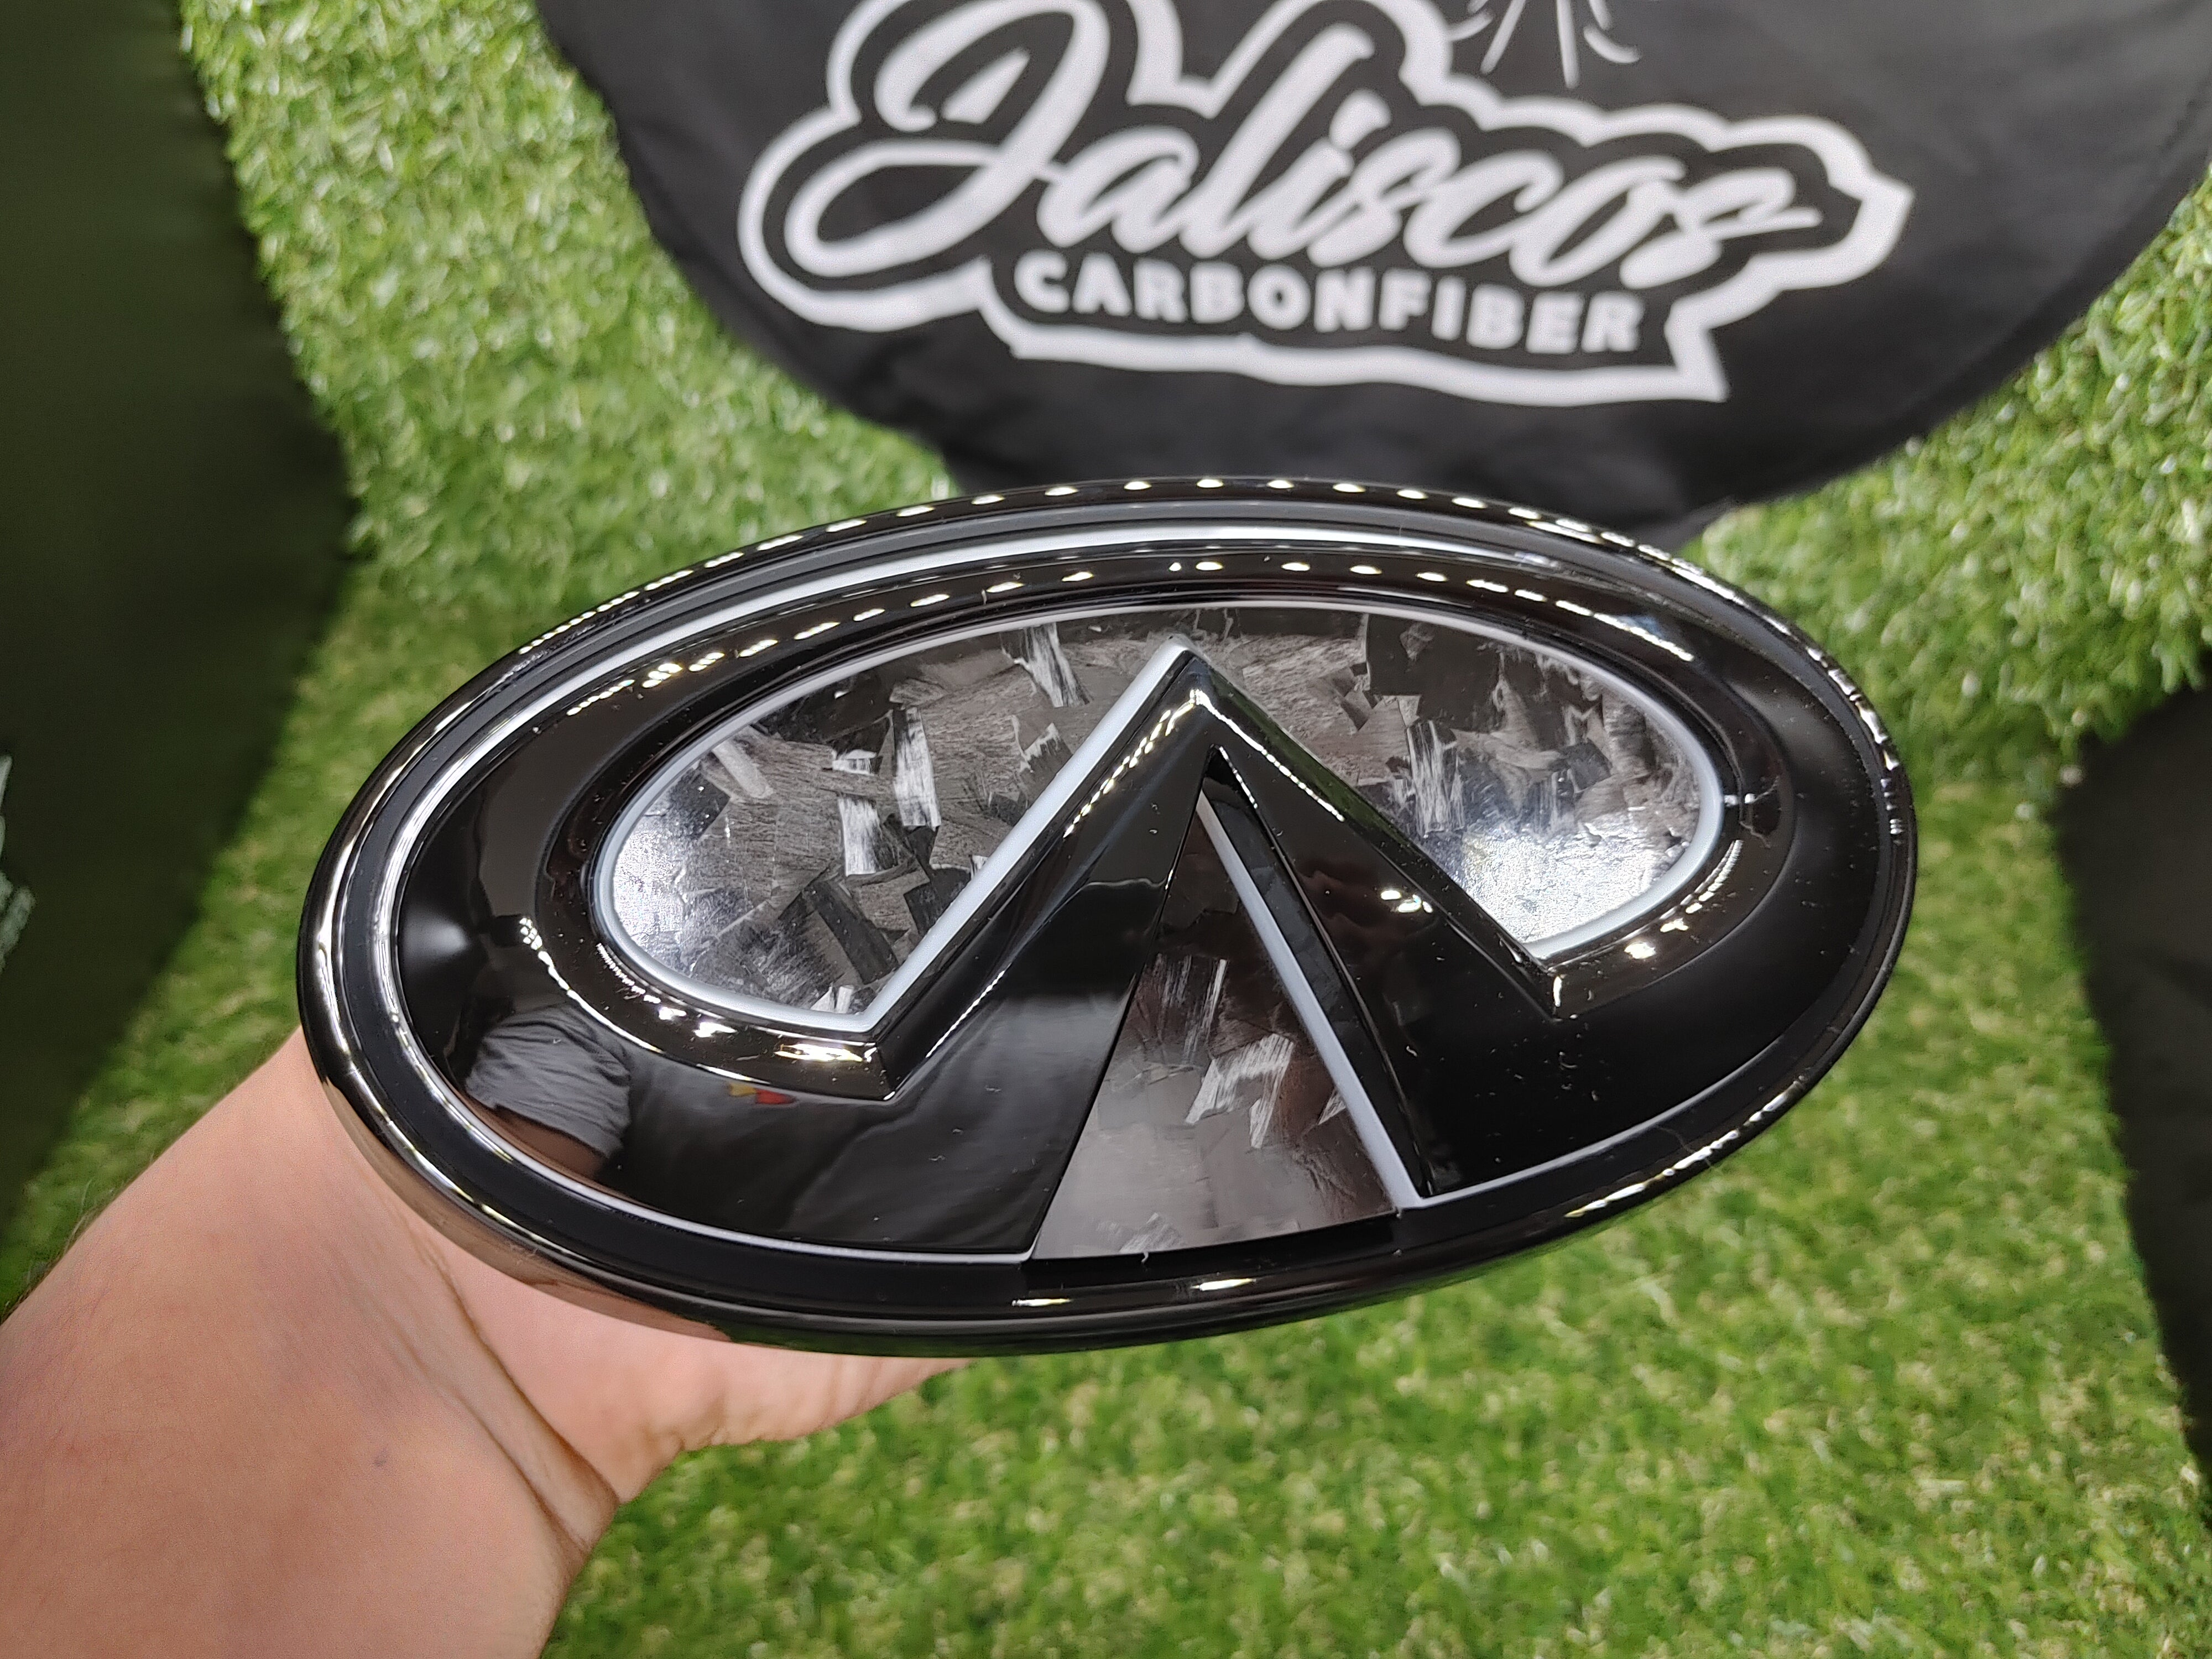 Jalisco's CarbonFiber V2 Front LED Logo Emblem | Infiniti Q50 2018+